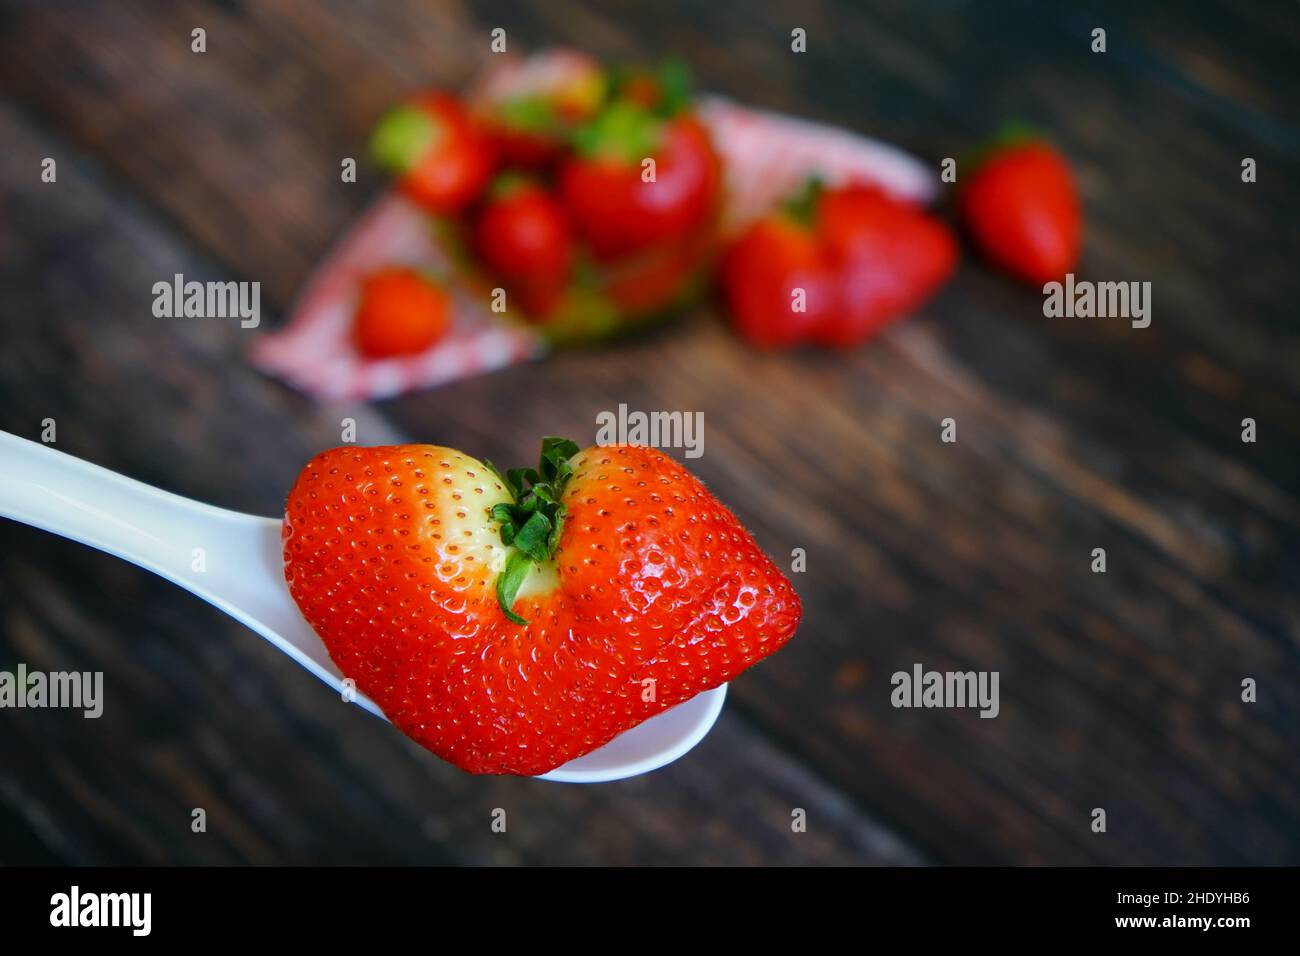 Eine einzigartige herzförmige Bio-Erdbeere auf einem weißen Löffel. Erdbeeren mit rot-weiß karierter Tischdecke auf einem rustikalen Holztisch im Hintergrund. Stockfoto